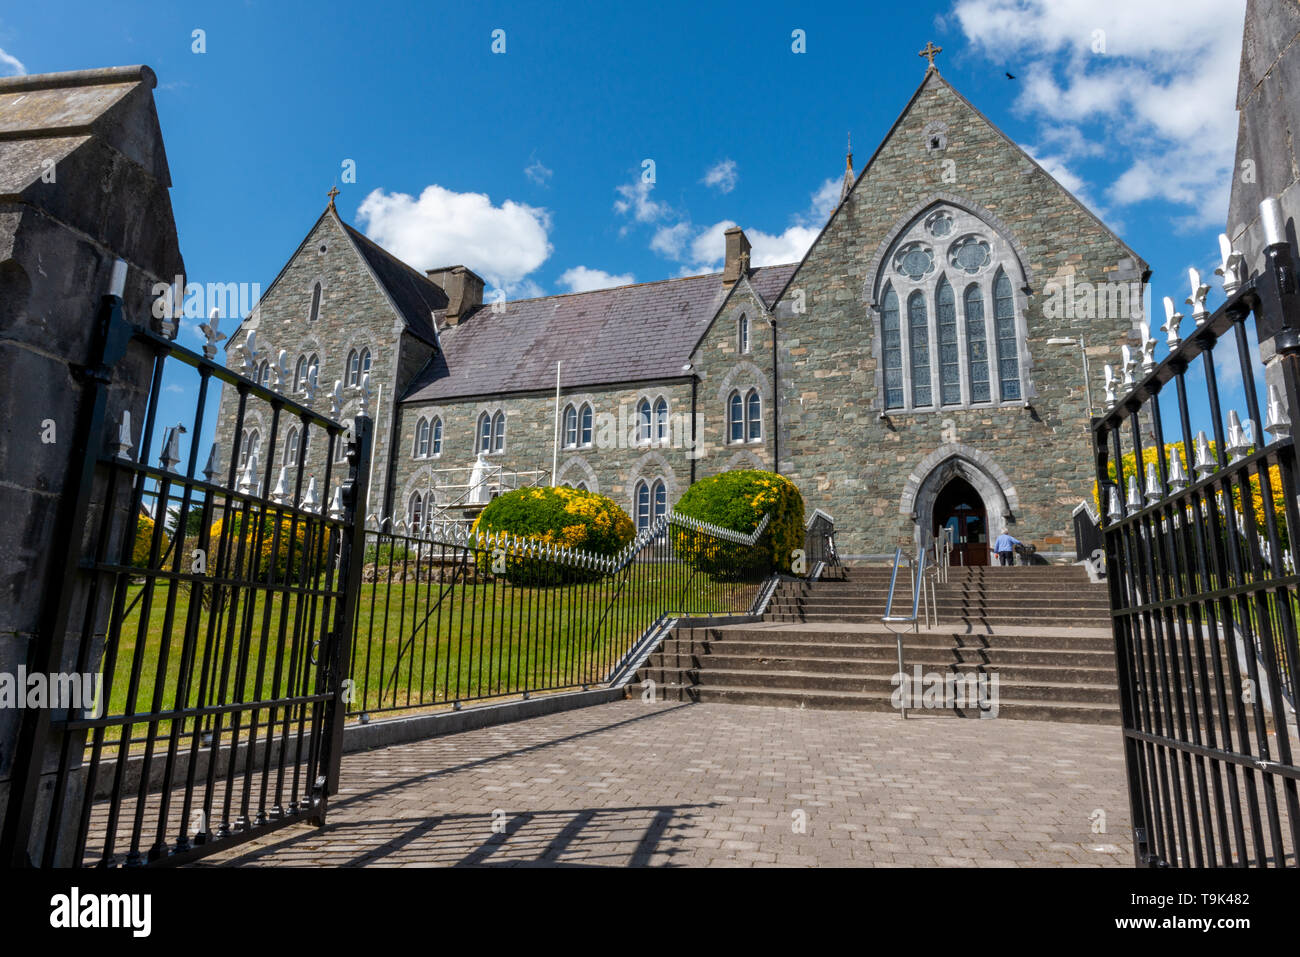 Religion Ireland style gothique Renaissance Franciscaine Église friaire d'Edward Welby Pugin à Killarney, comté de Kerry, Irlande Banque D'Images